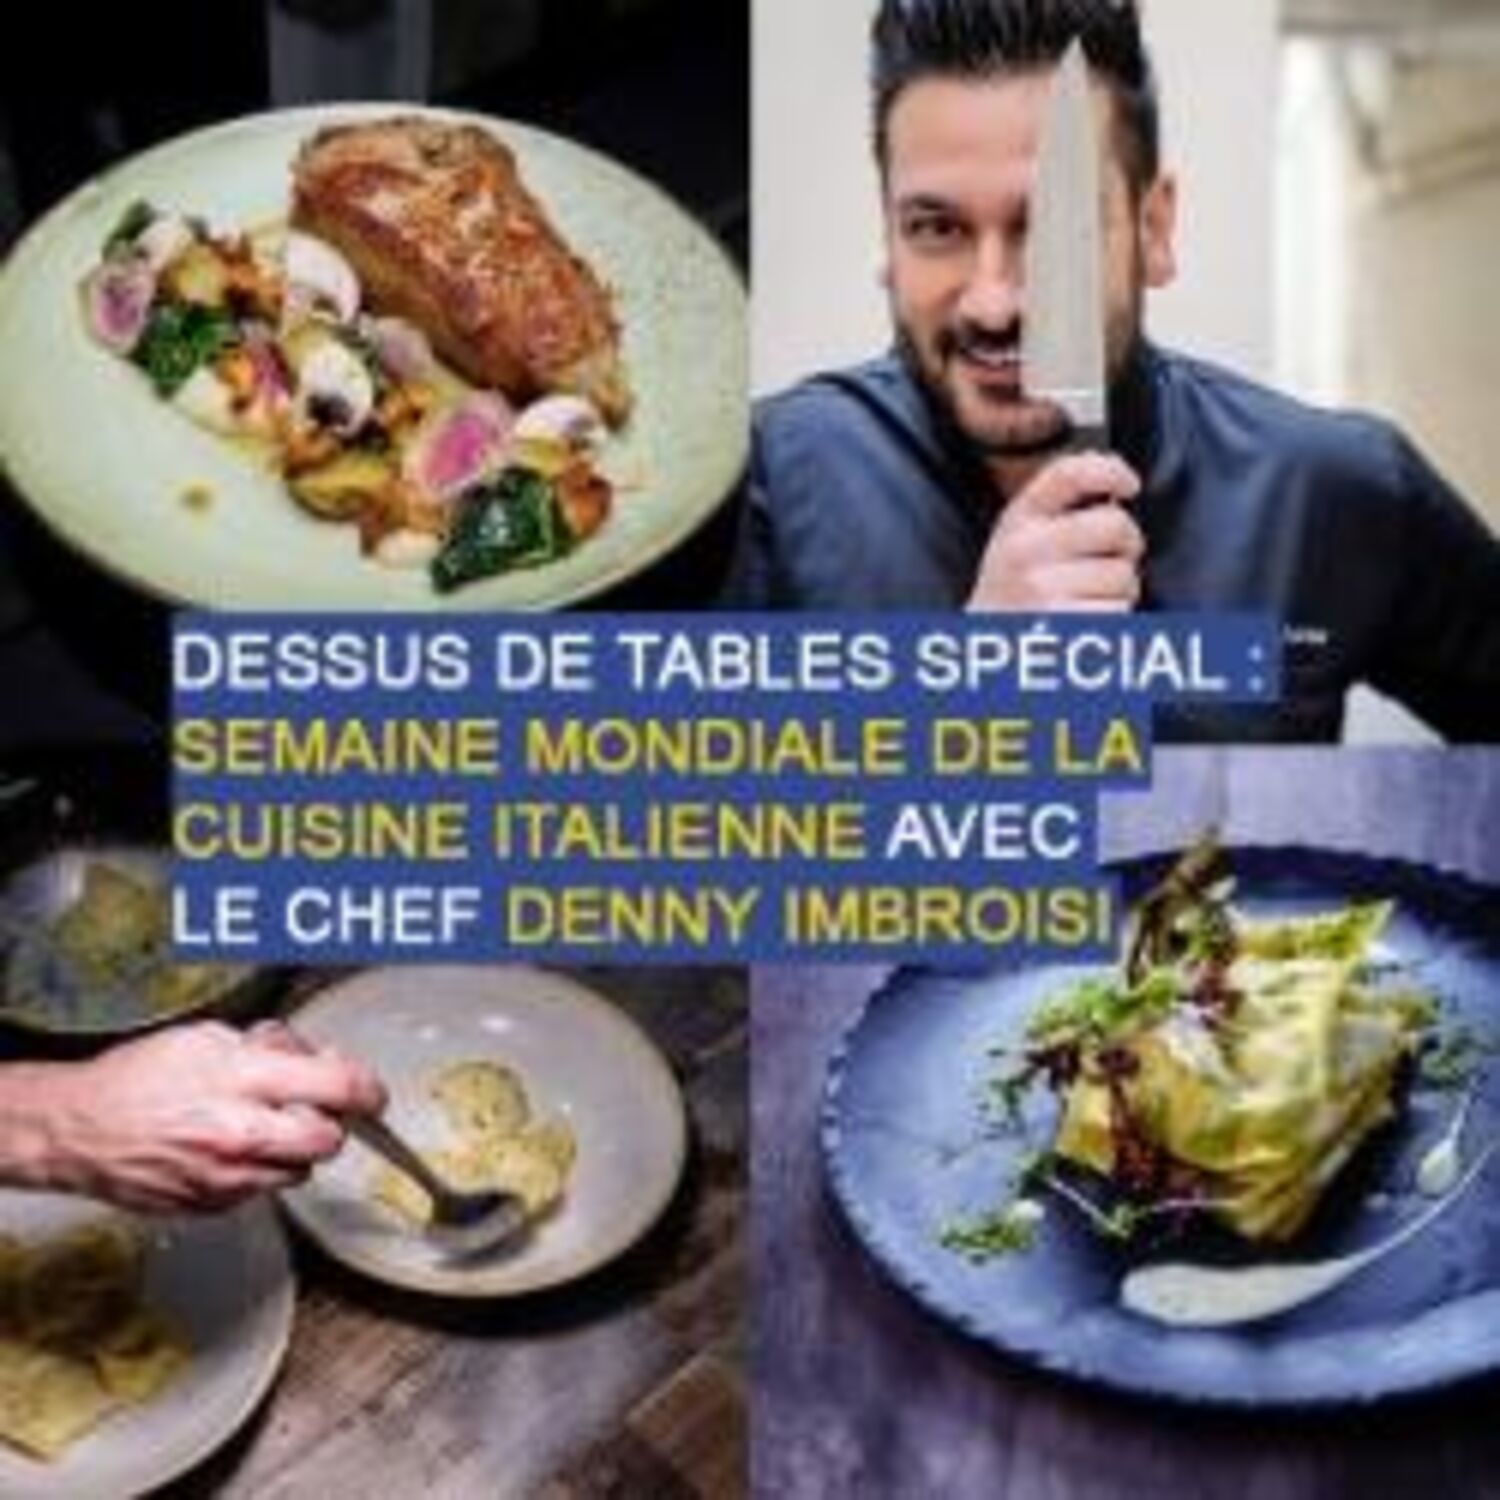 Dessus de tables du 21-11-2020 : Cuisine italienne, avec Denny...